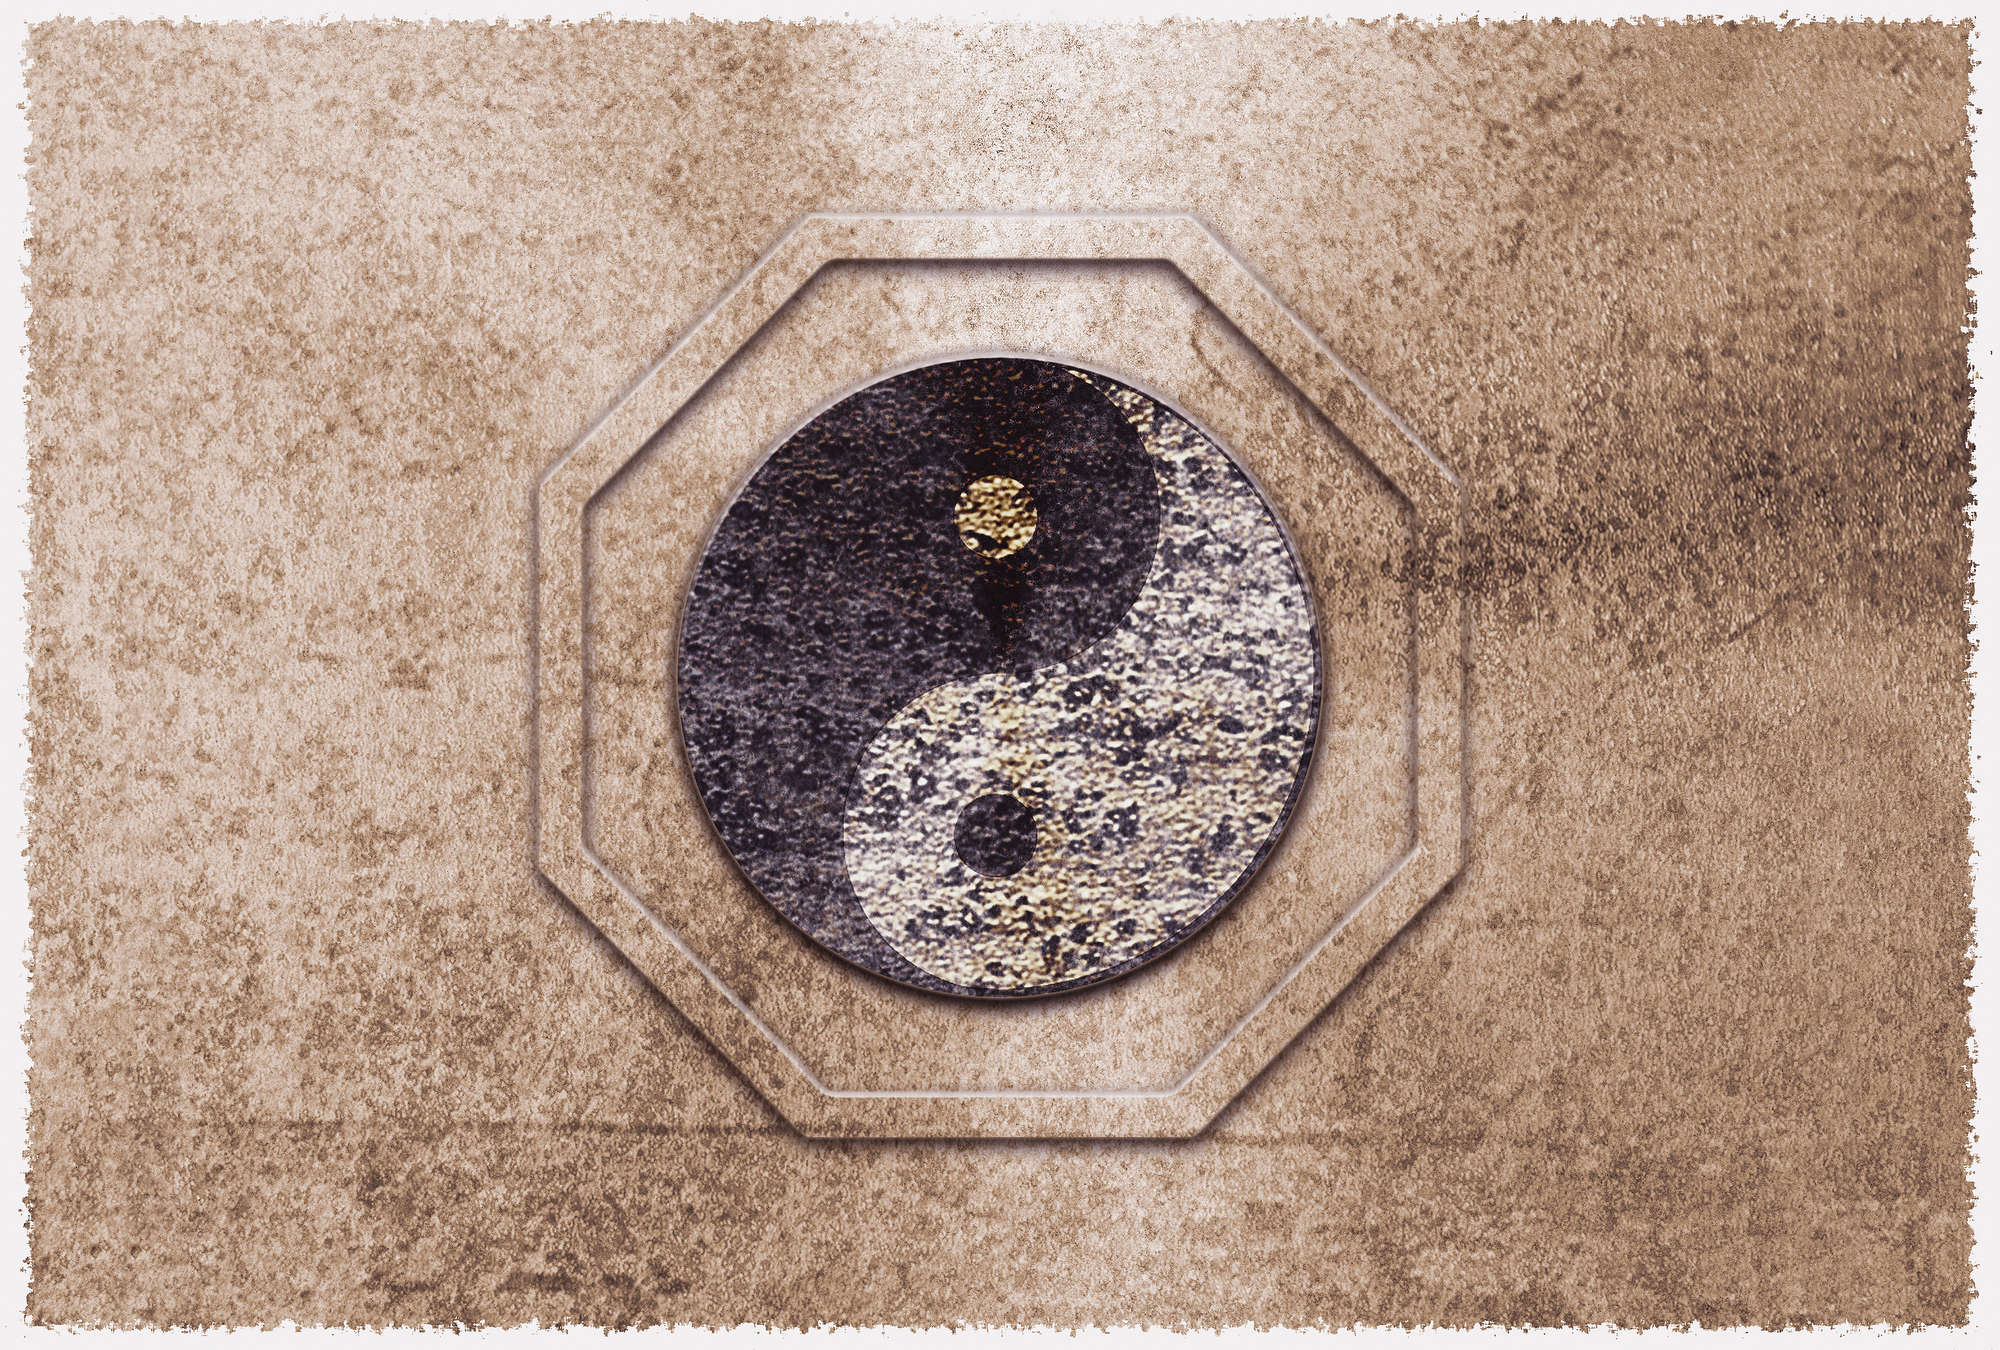             Fotomurali Yin&Yang, simbolo dell'armonia asiatica - Marrone, nero, bianco
        